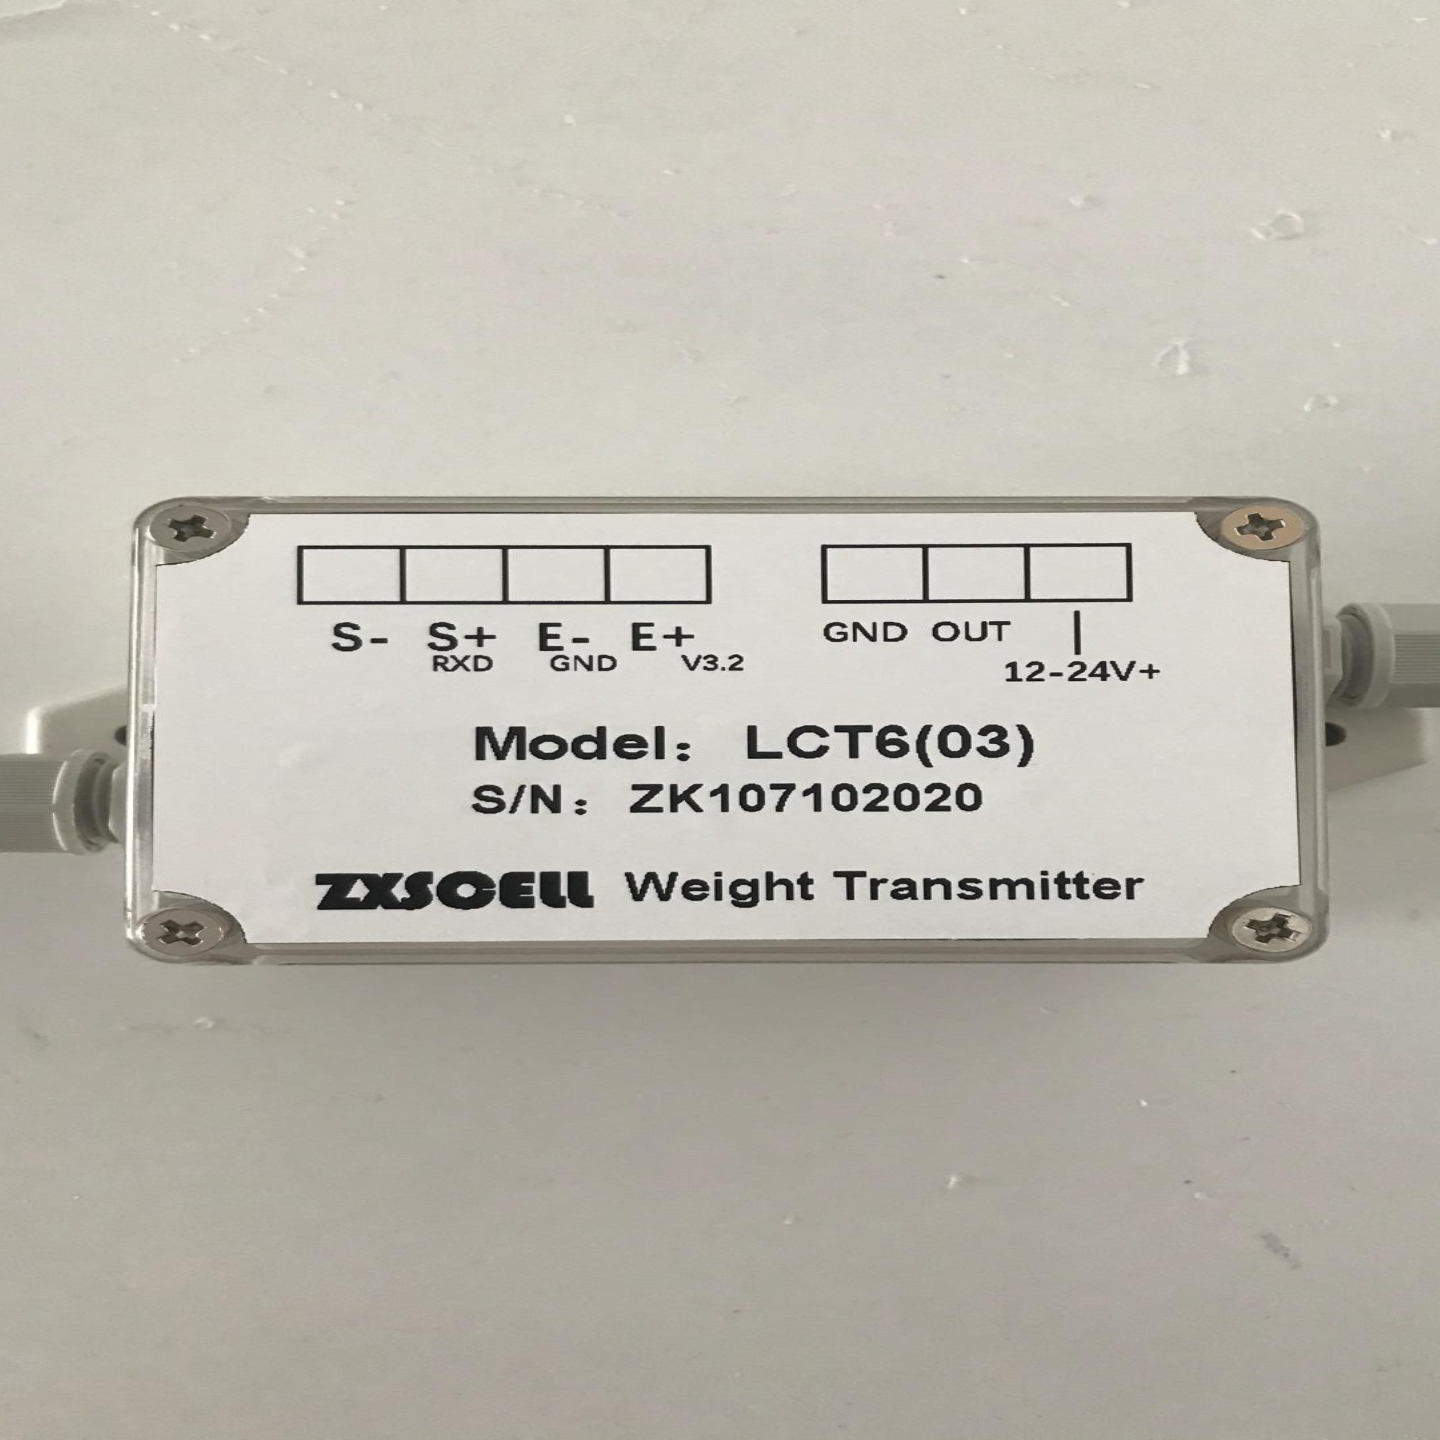 美国 中克塞尔 ZXSCELL 称重变送器 LCT6(03) 数字式重量变送器